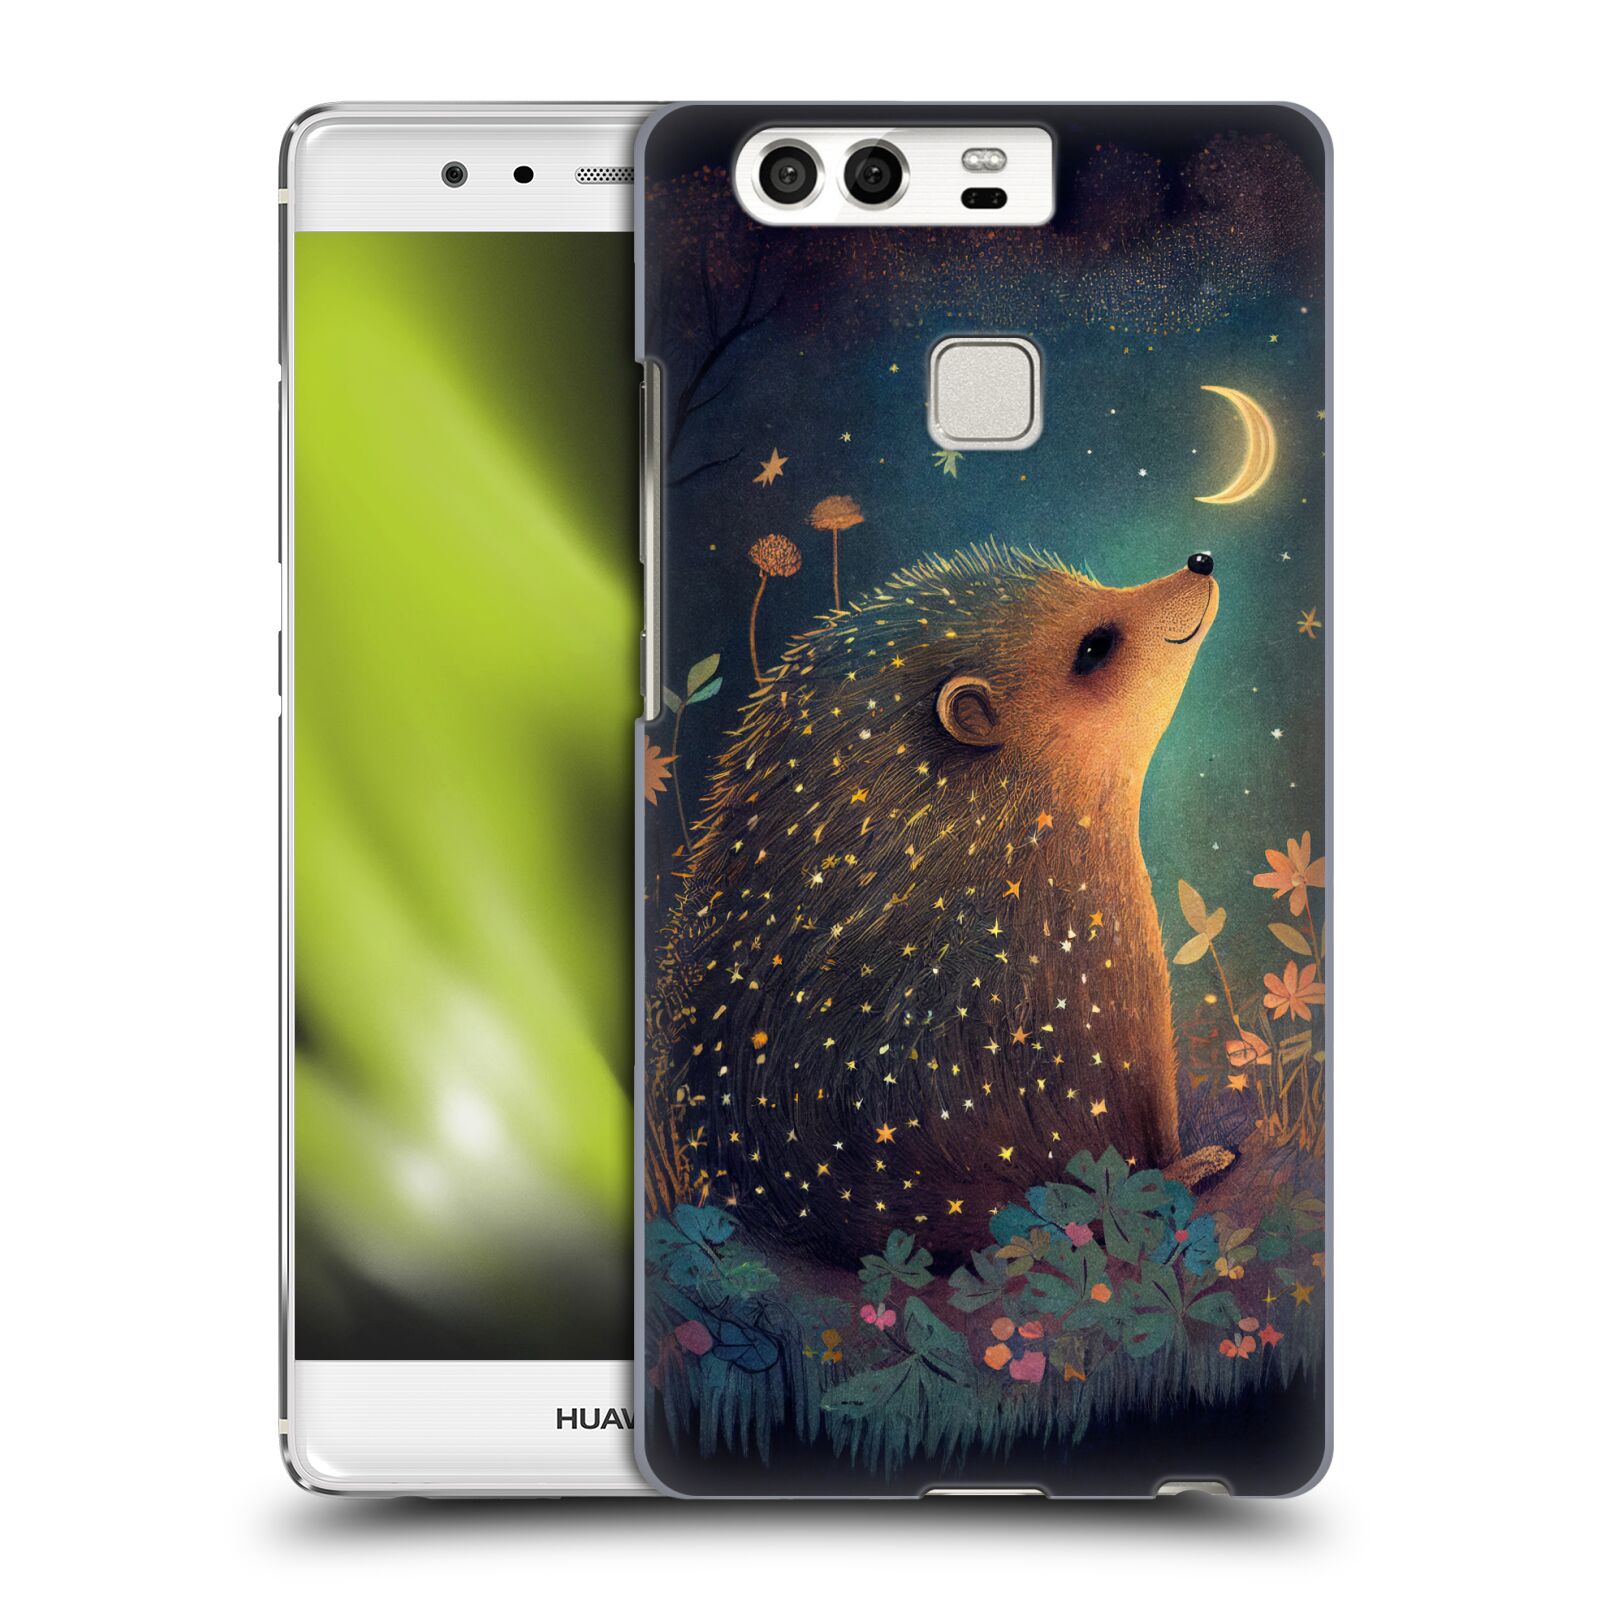 Obal na mobil Huawei P9 / P9 DUAL SIM - HEAD CASE - JK Stewart malý ježeček